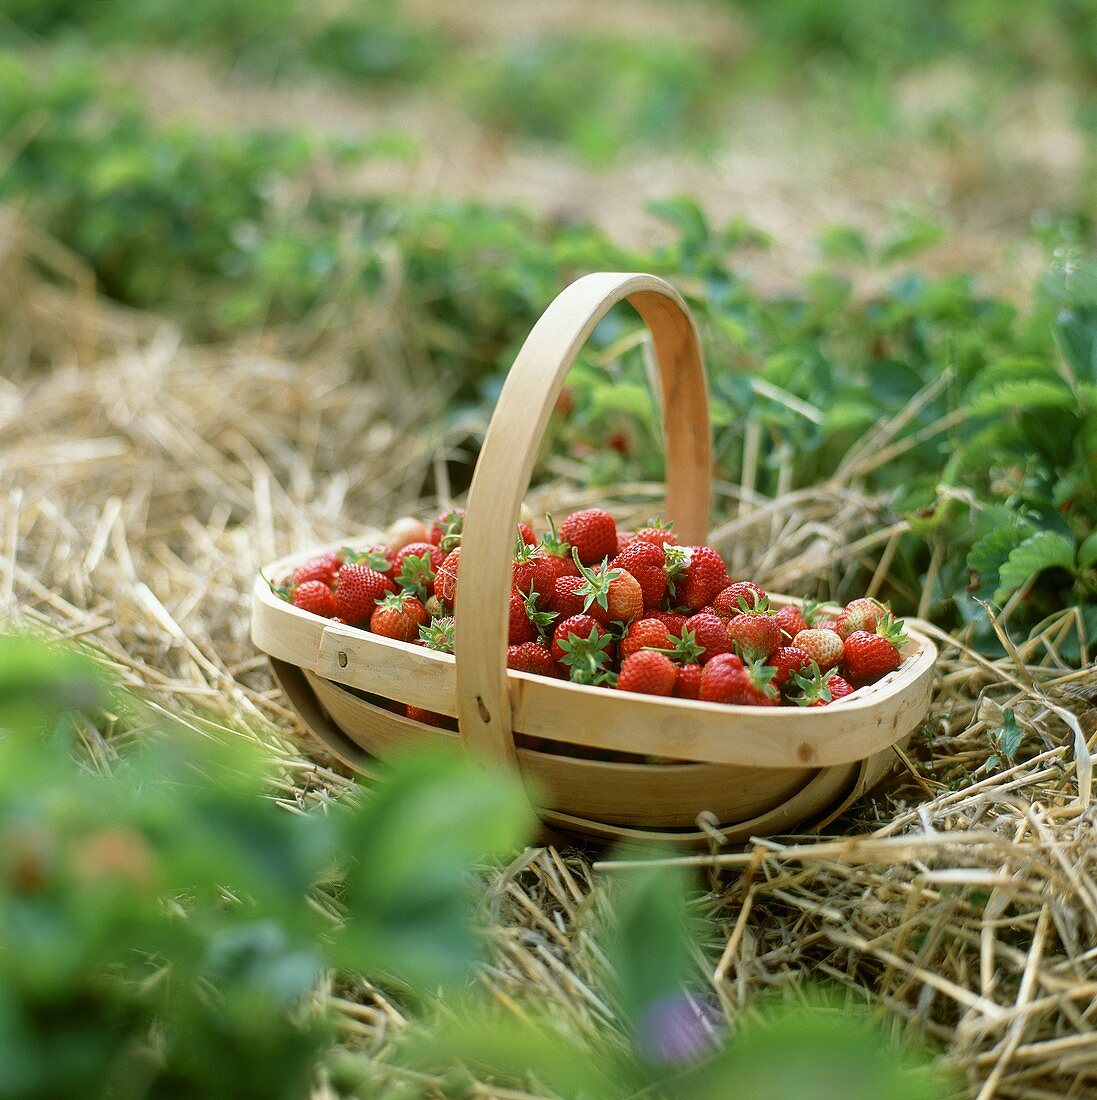 Körbchen mit frisch gepflückten Erdbeeren im Erdbeerfeld